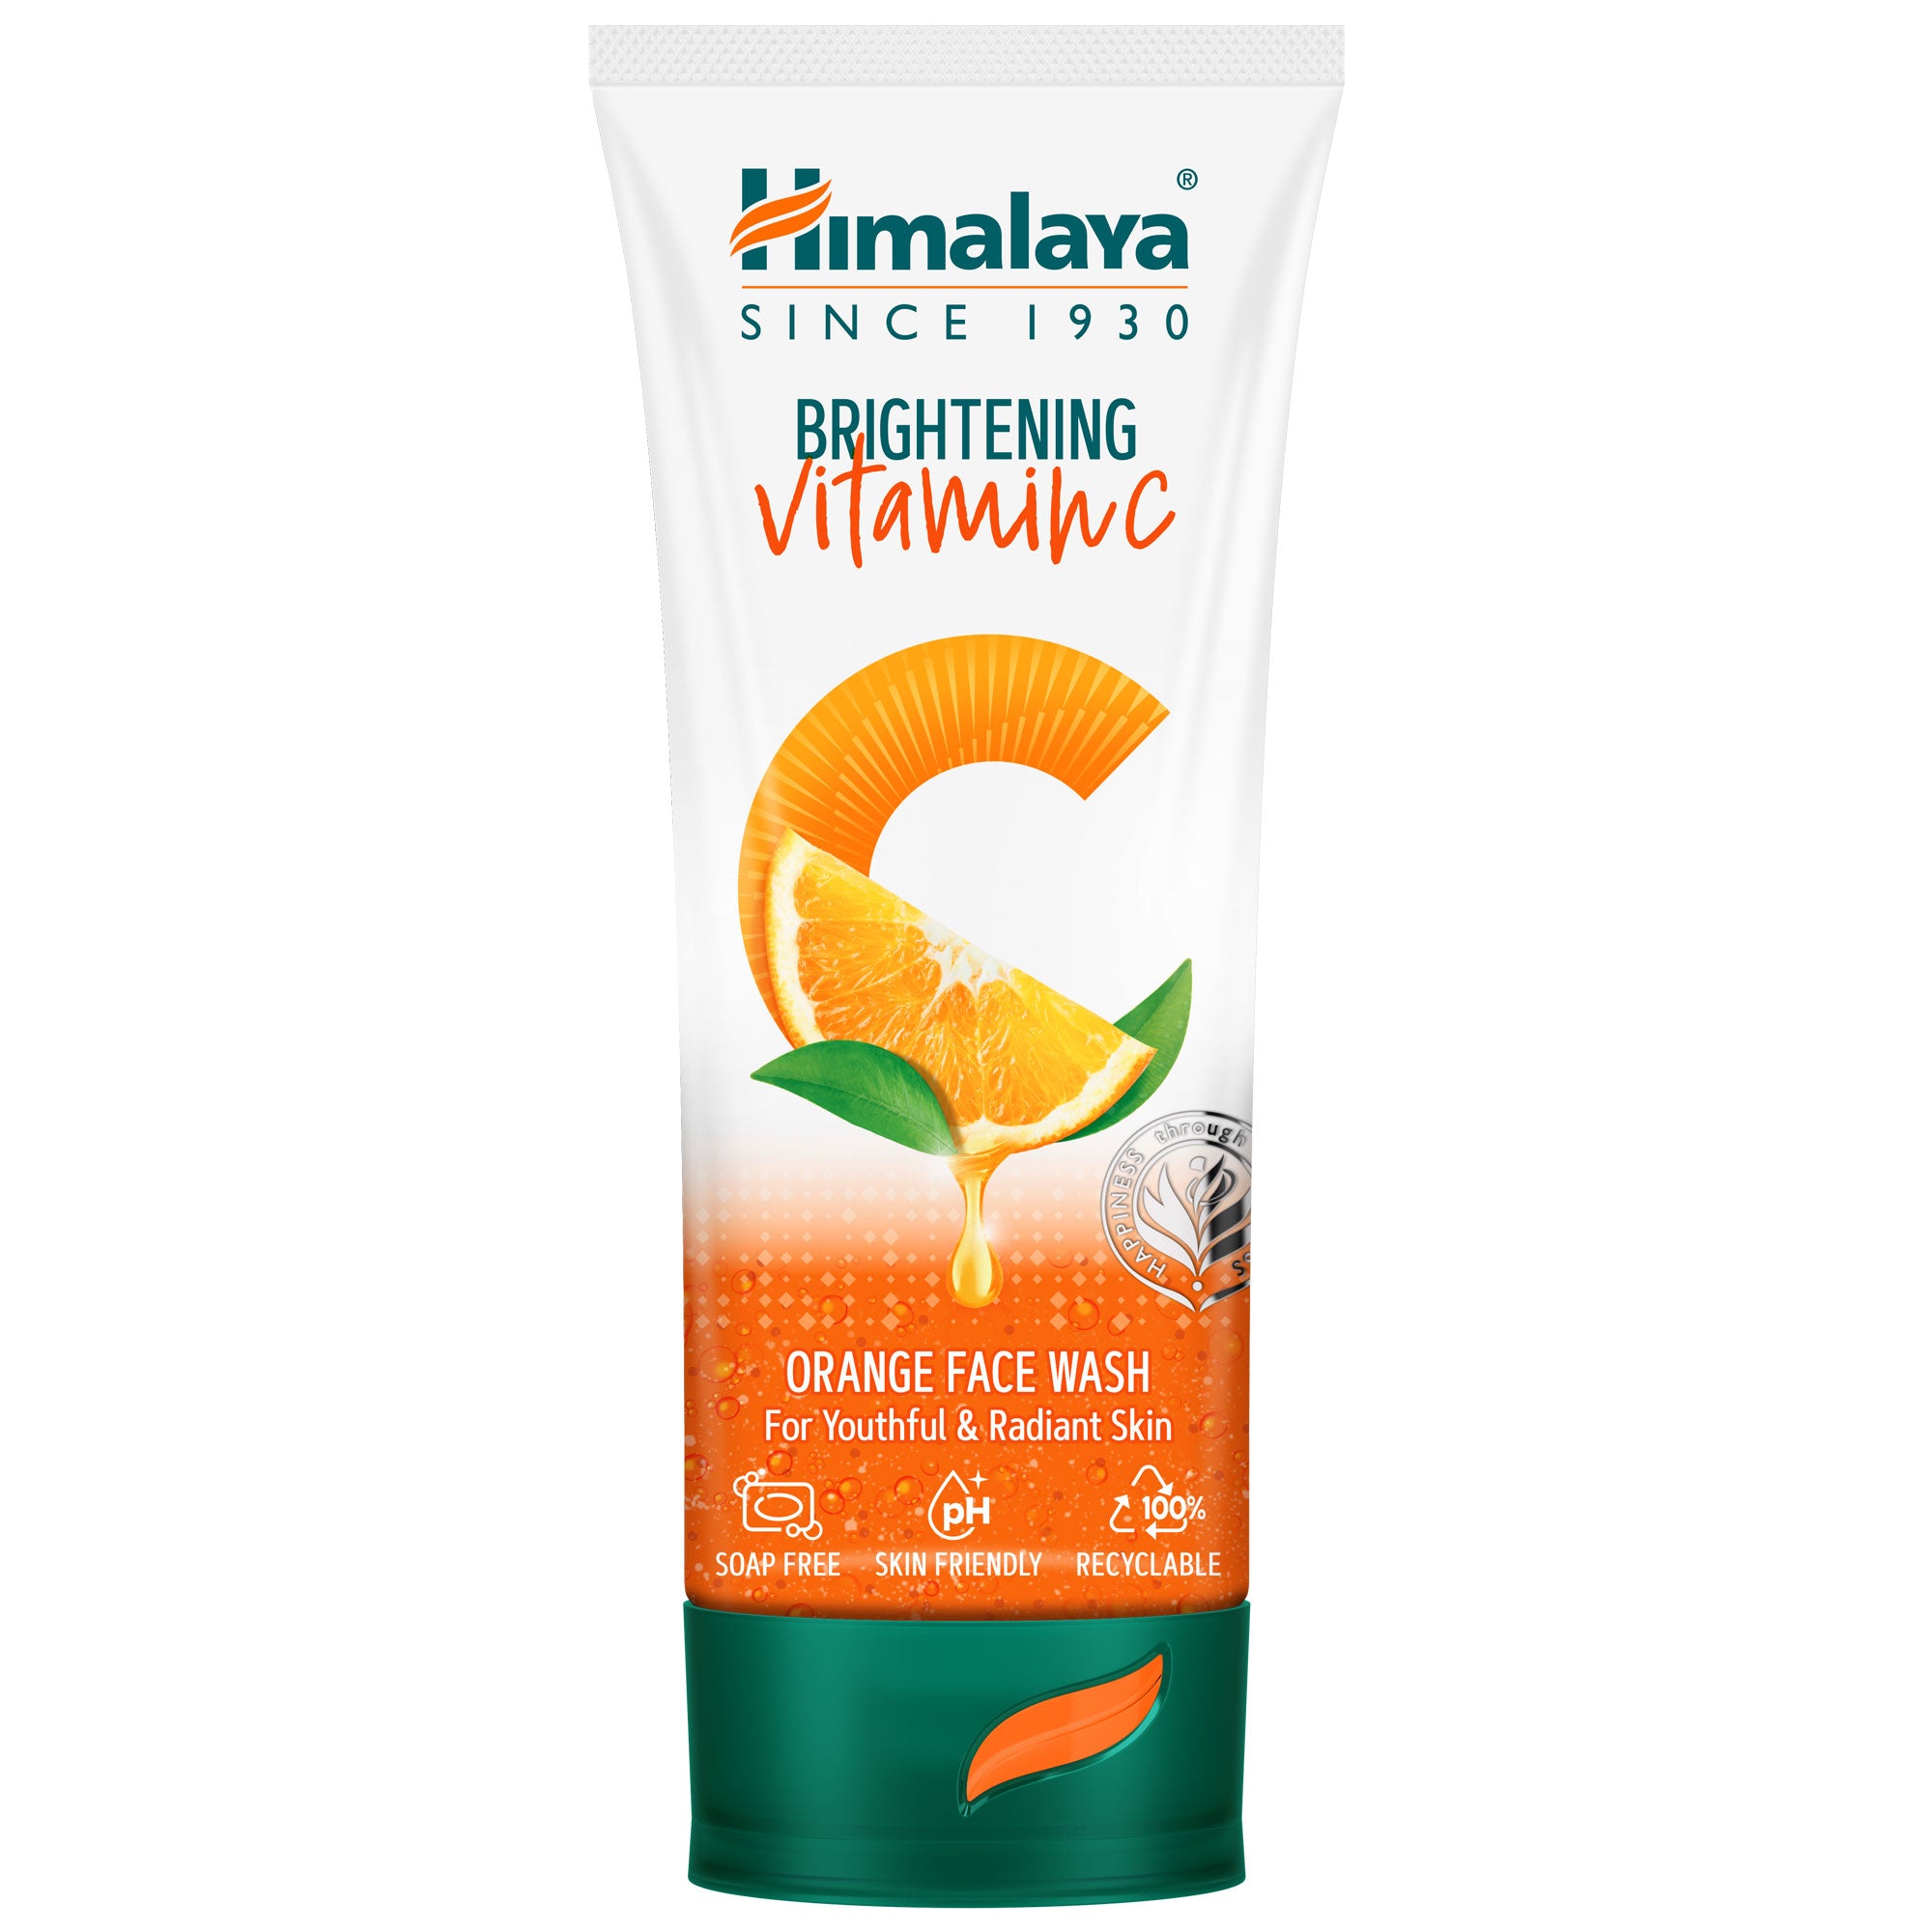 Himalaya Brightening Vitamin C Orange Face Wash